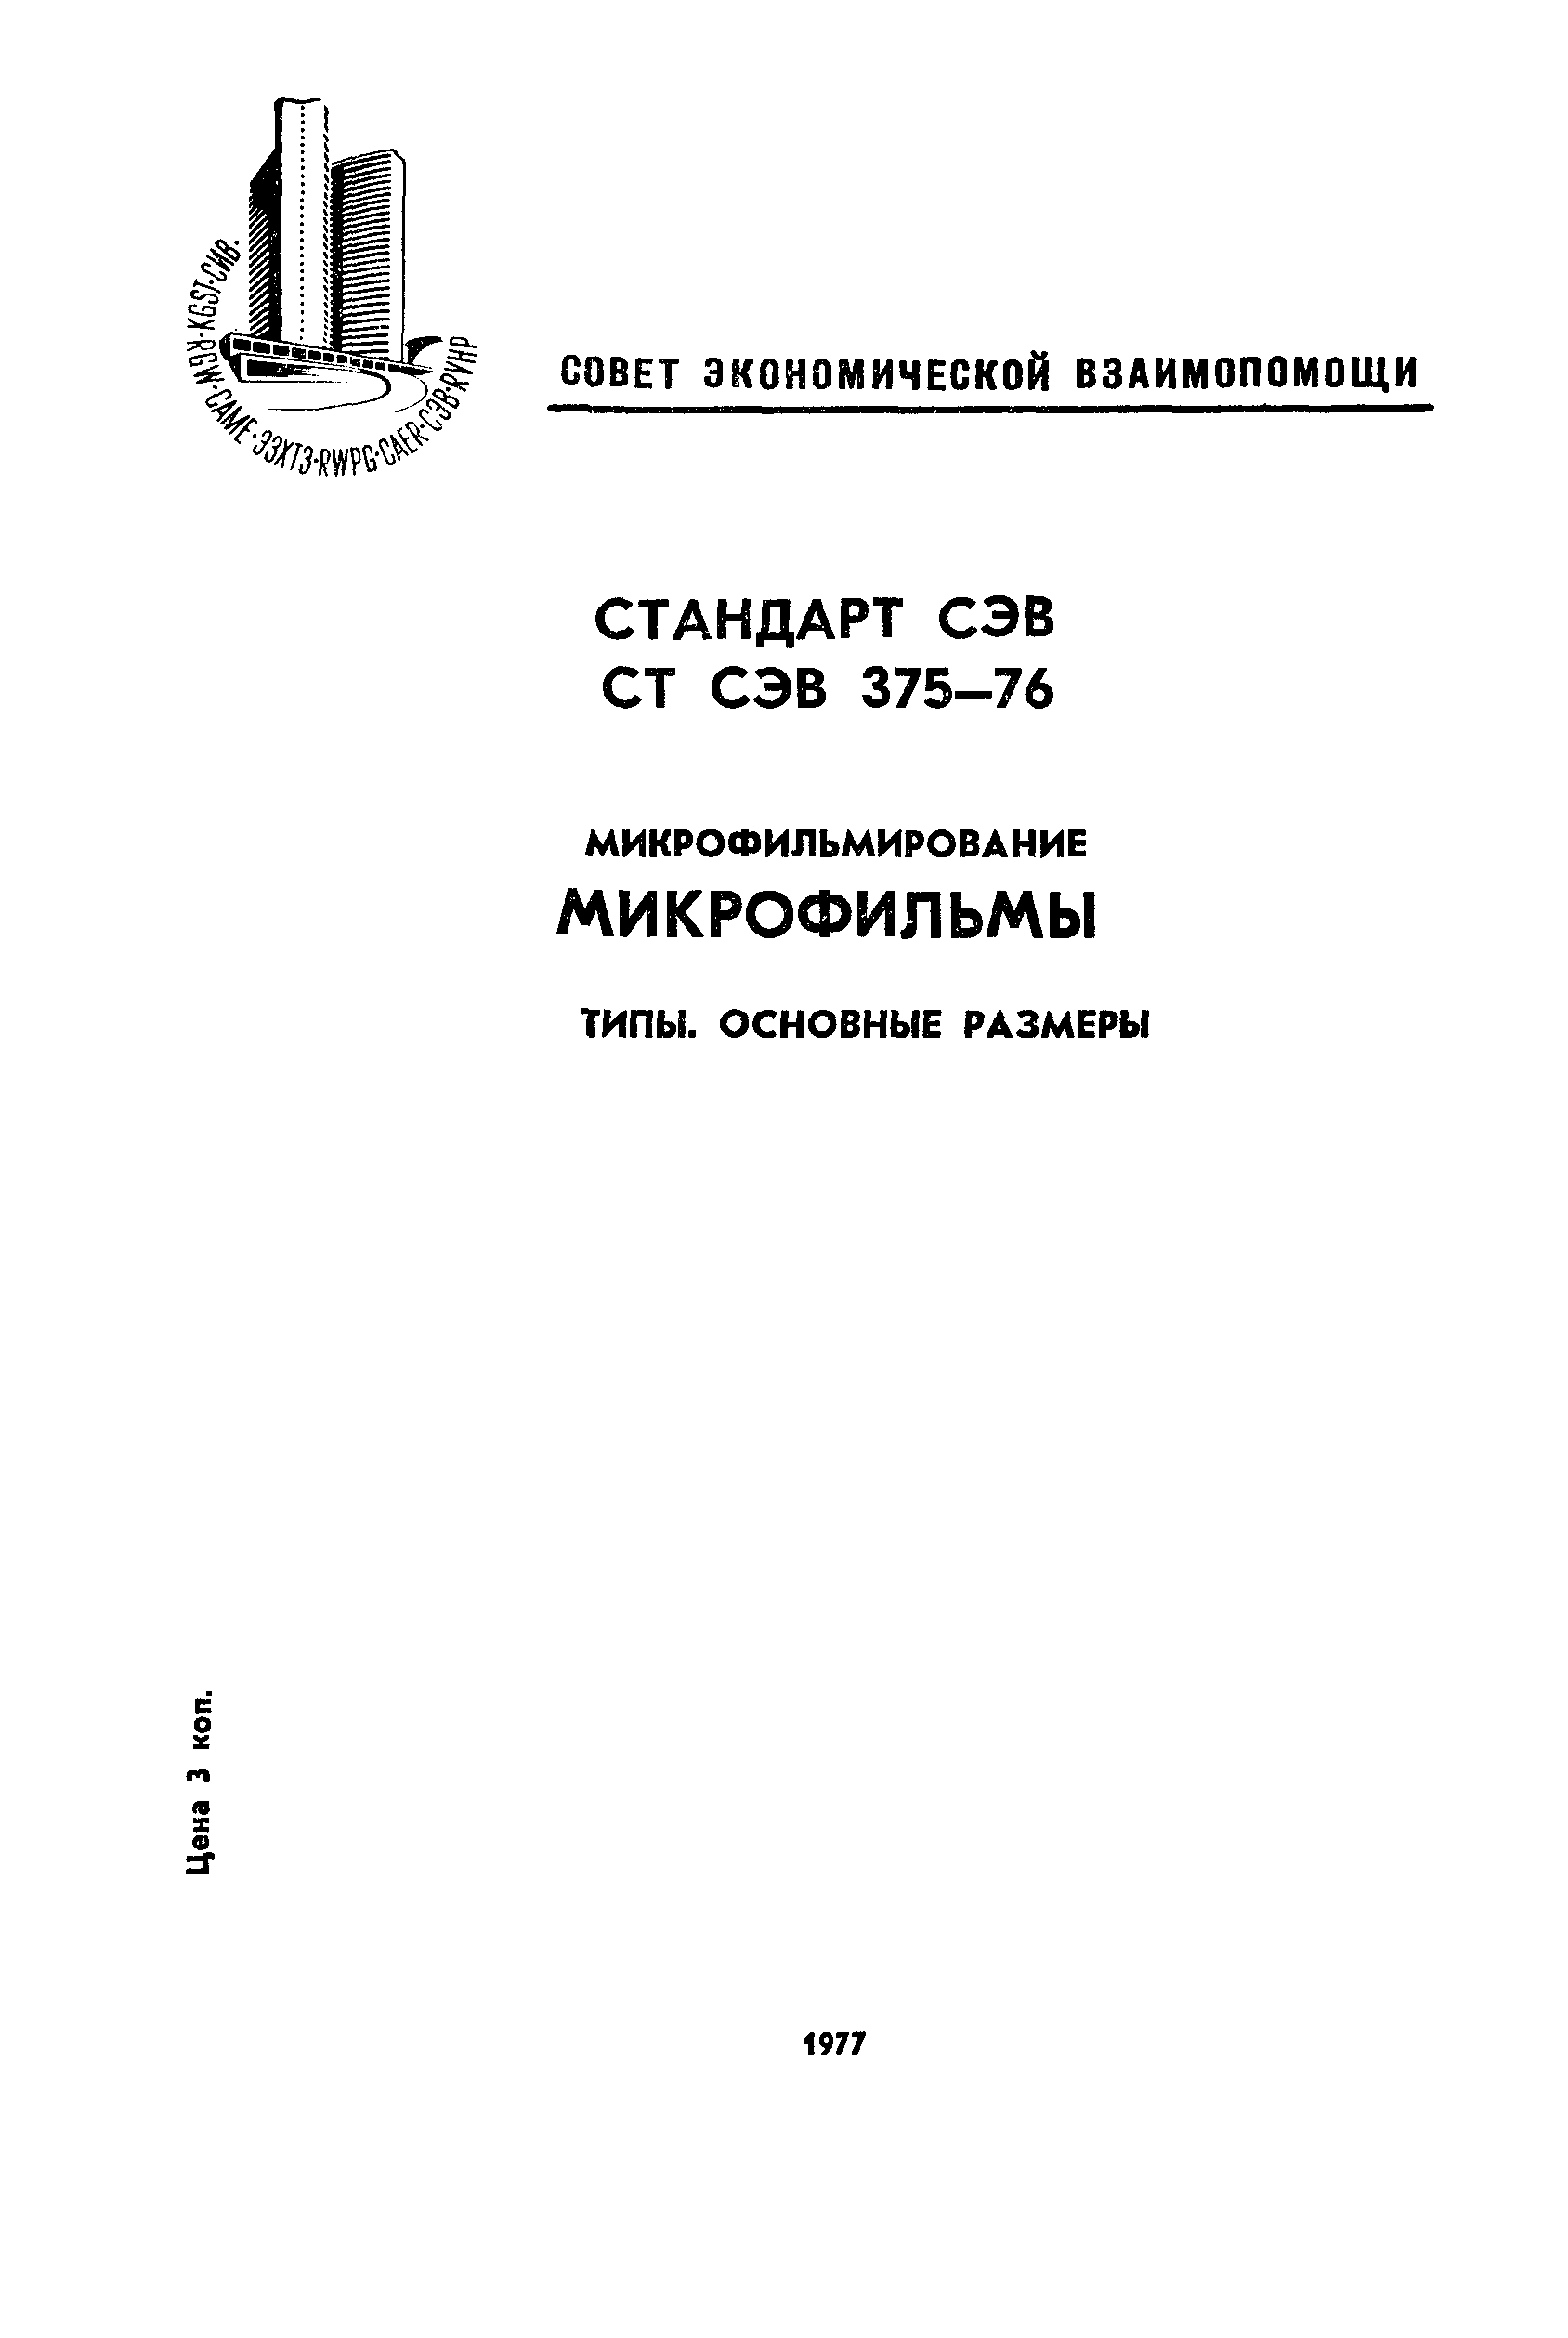 СТ СЭВ 375-76